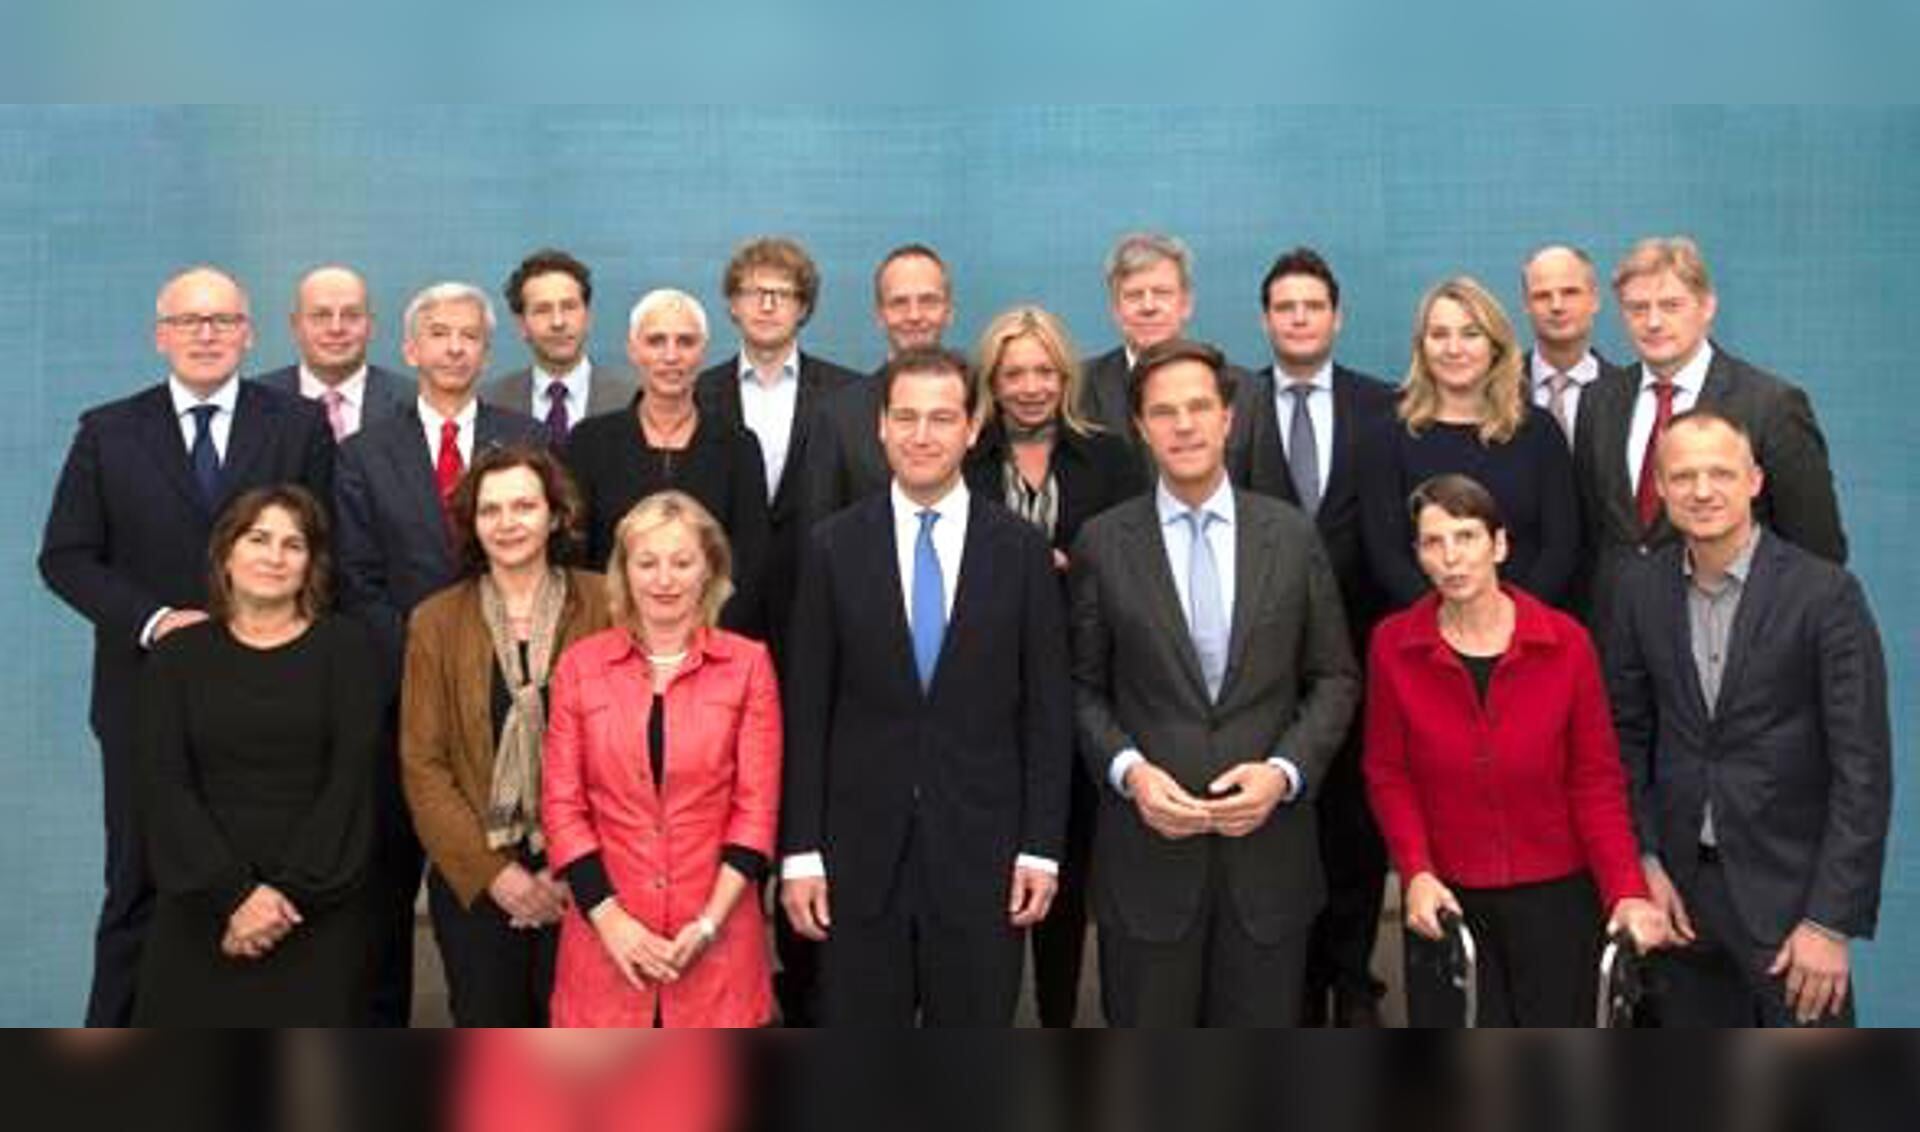 Het kabinet Rutte-Asscher dat in 2012 van start ging.